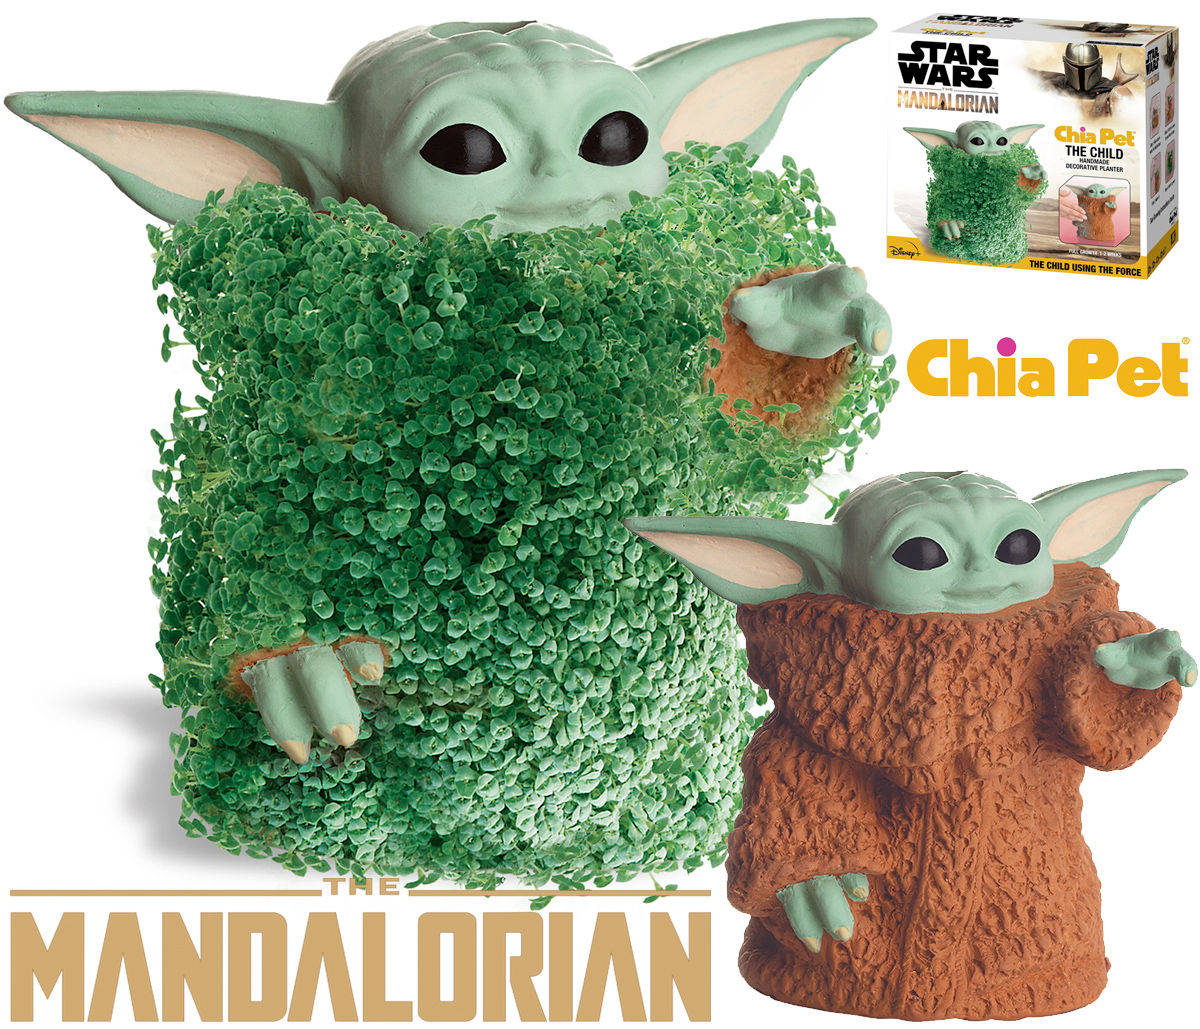 Baby Yoda Chia Pet Usando a Força com Corpo de Grama (Star Wars: The Mandalorian)